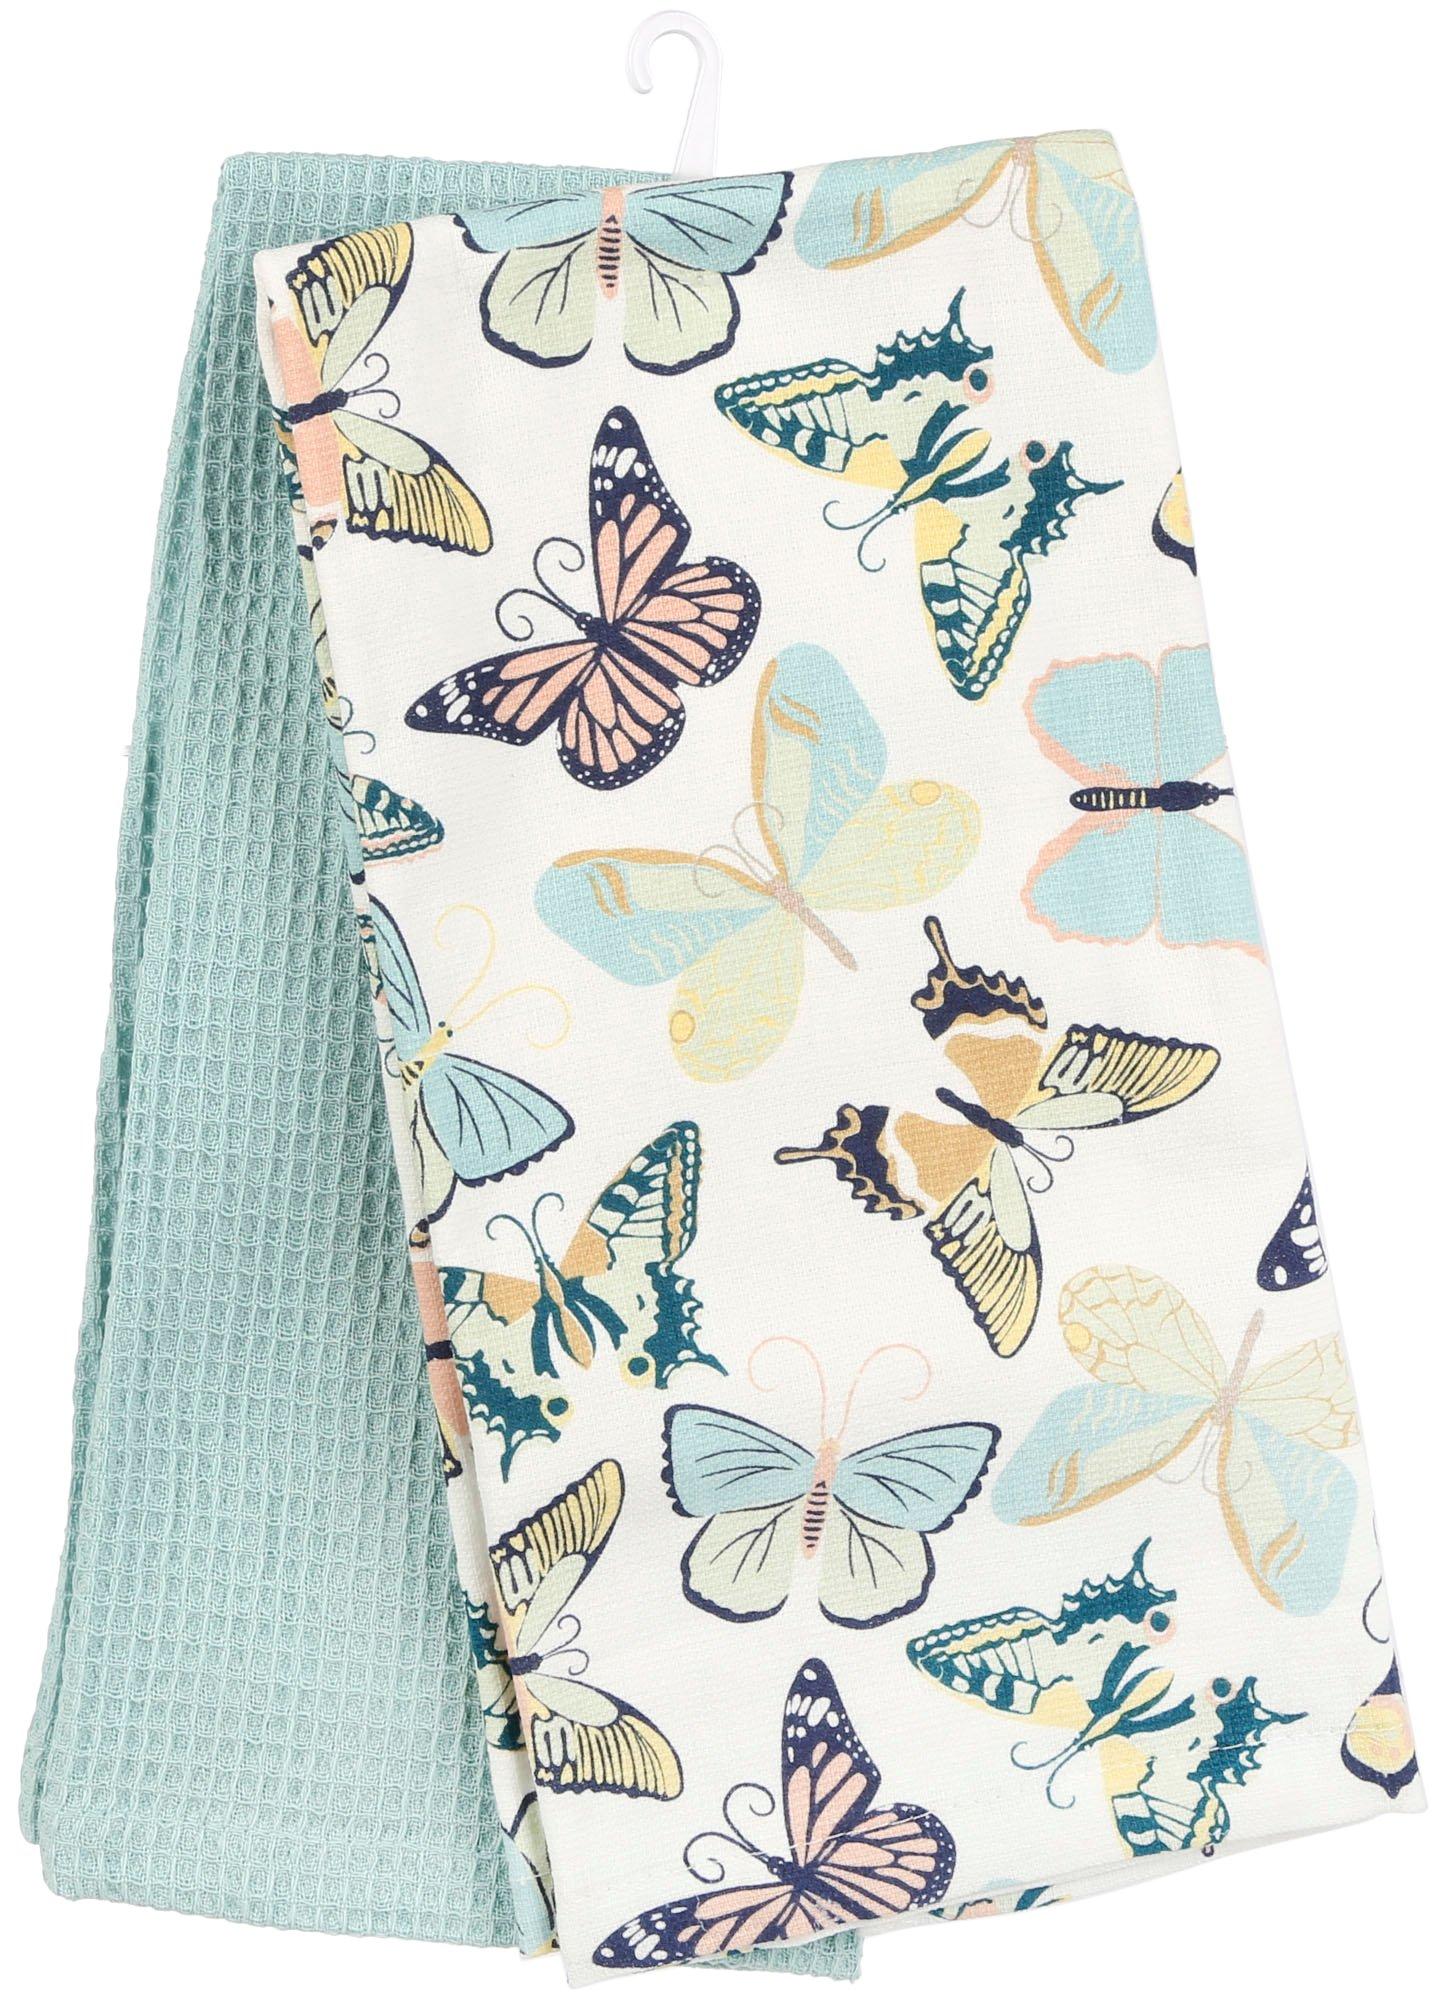 Homewear 2 Pk. Butterflies Kitchen Towel Set